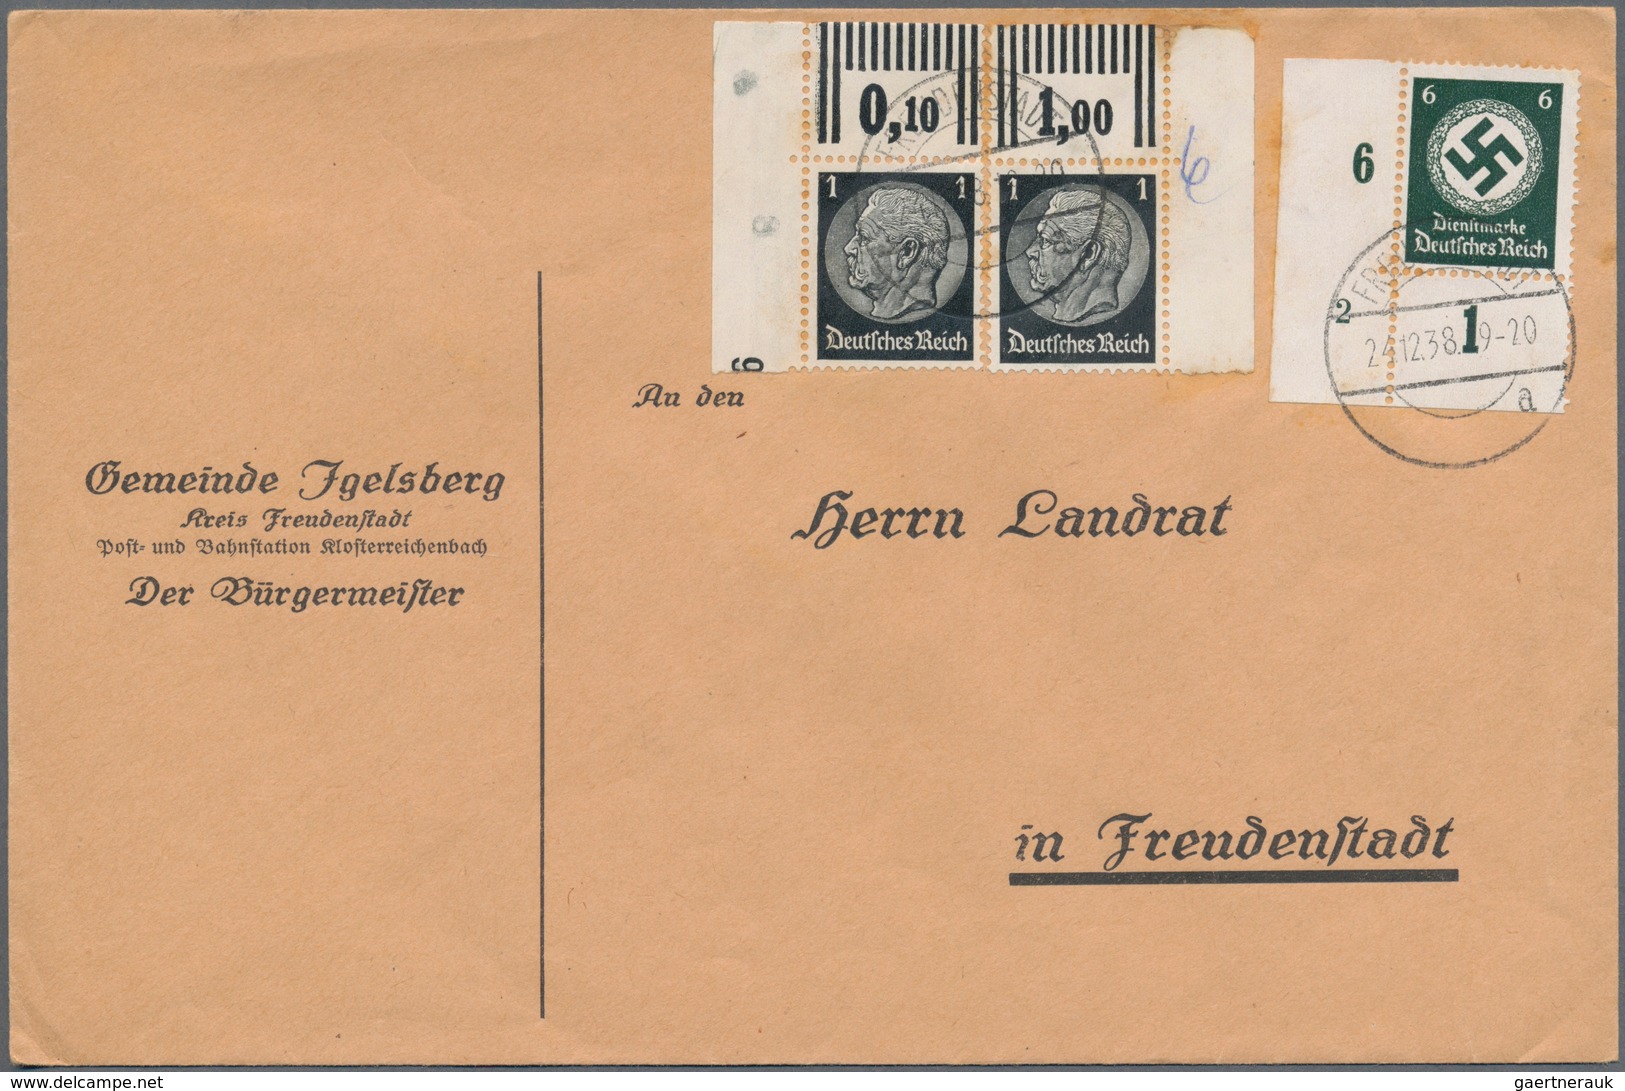 Deutsches Reich: 1925-1944, Selten Angebotene Sammlung Mit über 150 Briefen Und Belegen Alle Mit Eck - Sammlungen